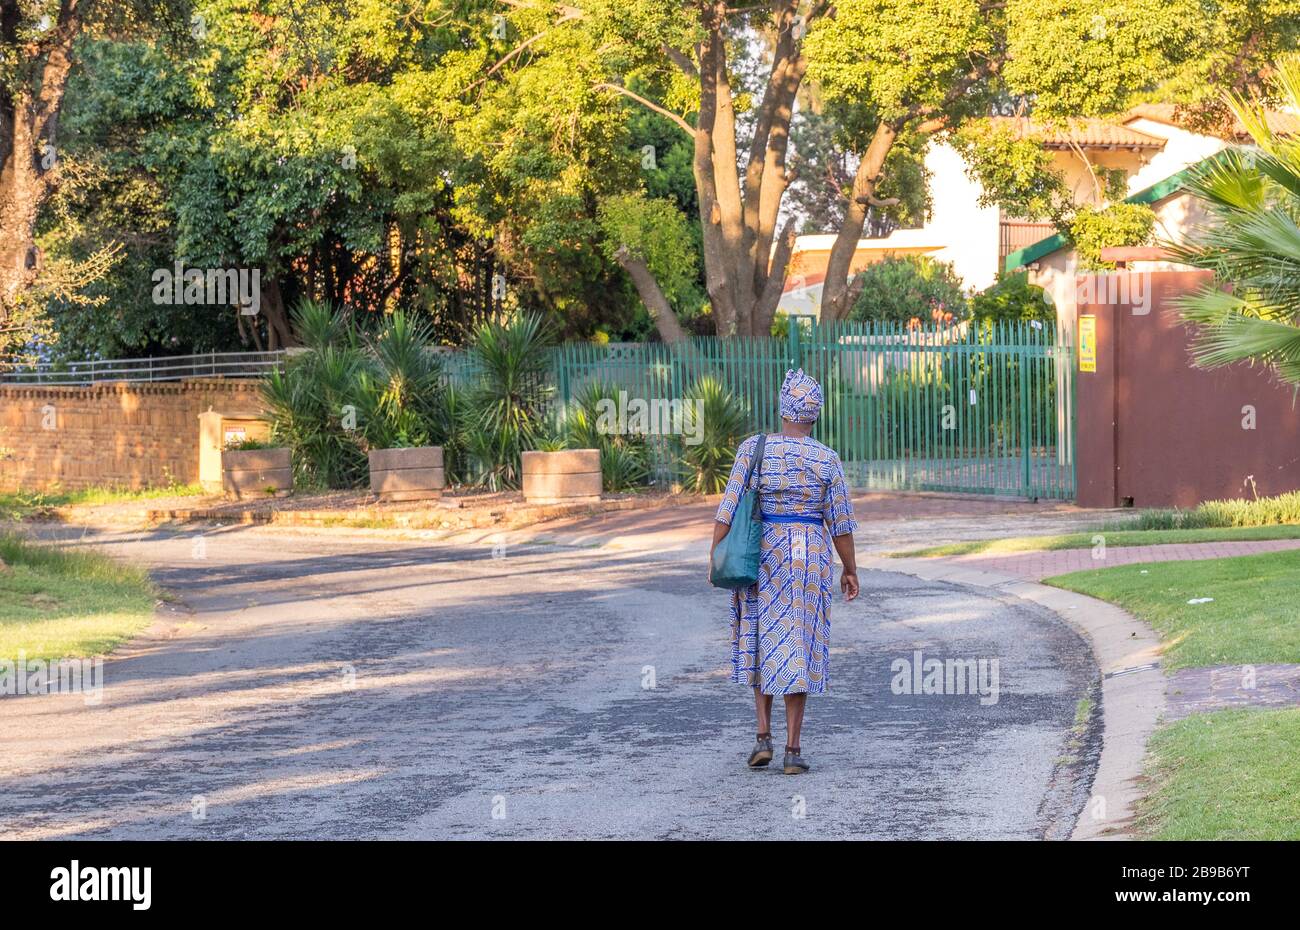 Alberton, Sud Africa - una donna nera africana single anziana cammina da sola in un'immagine di strada residenziale deserta in formato orizzontale Foto Stock